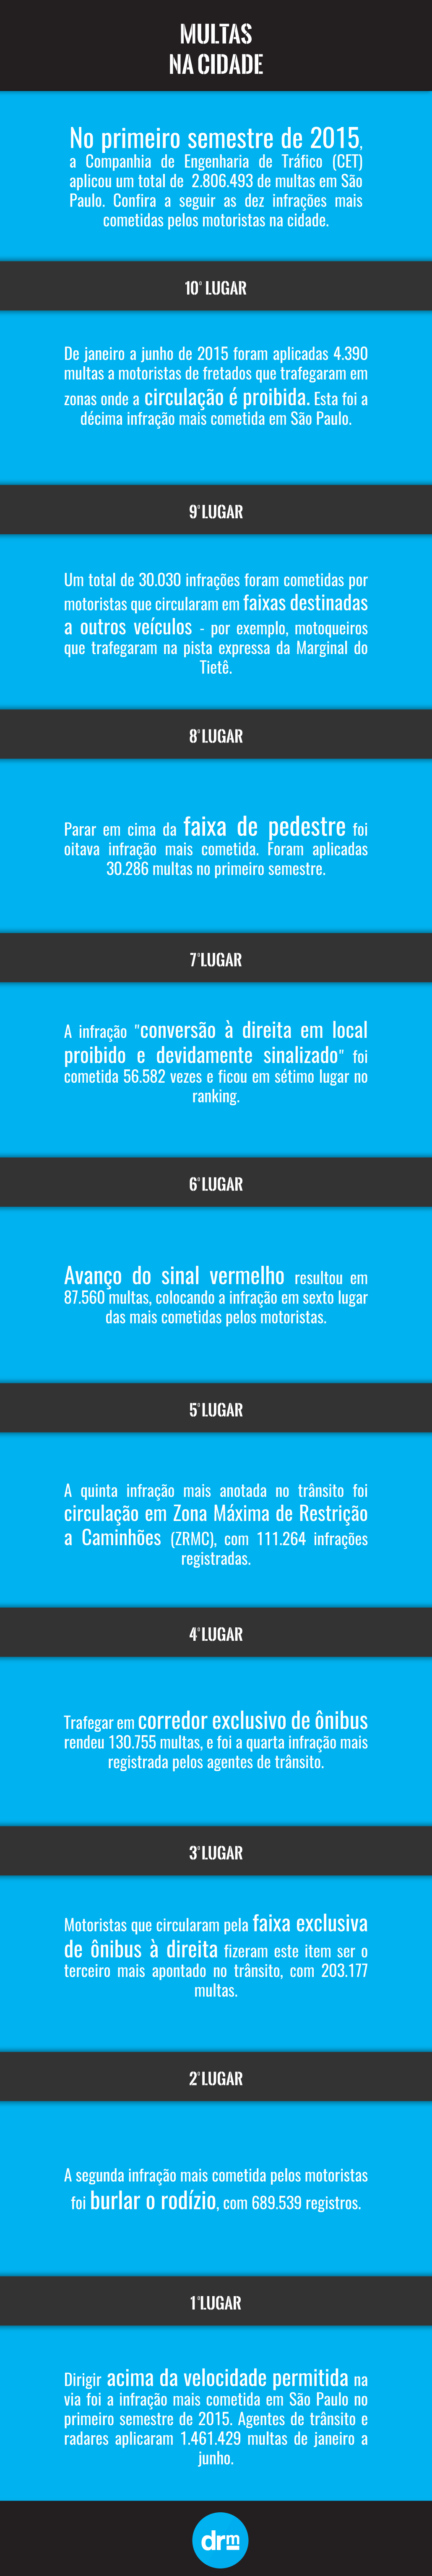 multas em São Paulo mais cometidas